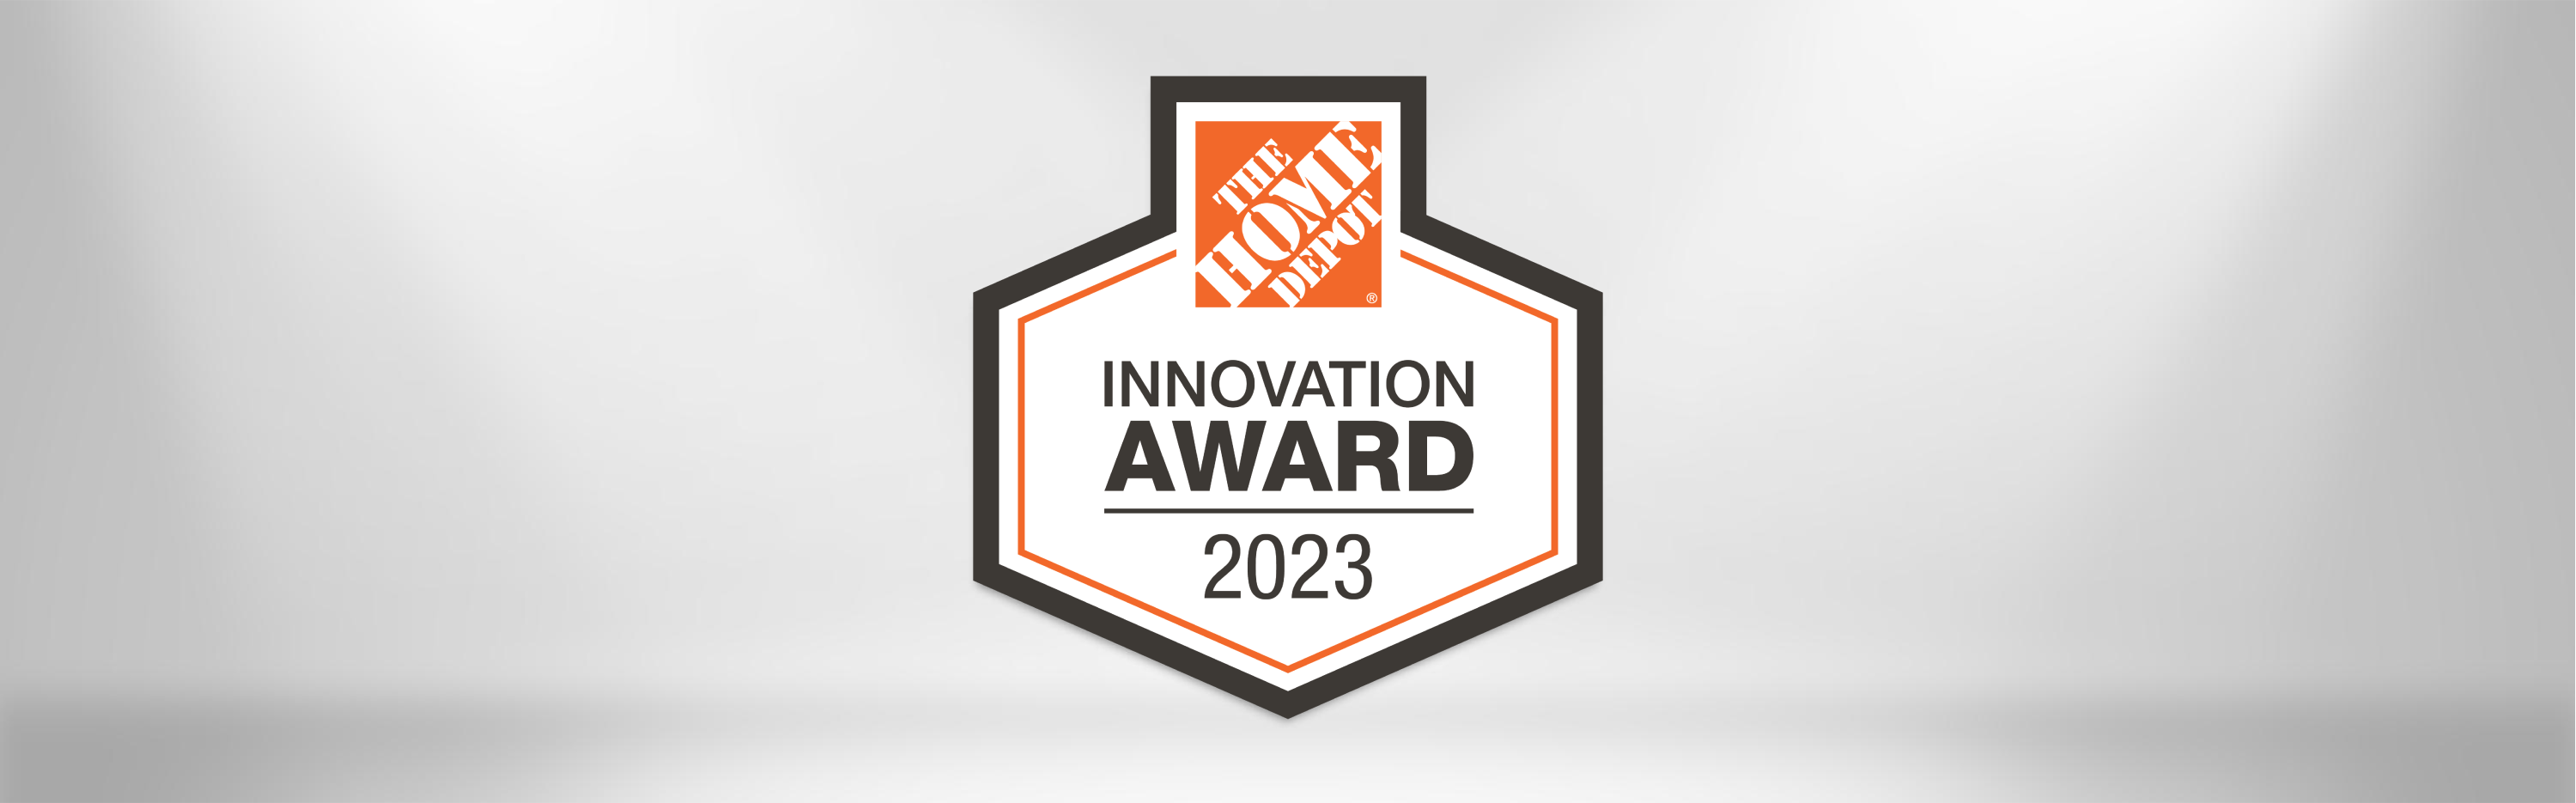 Innovation Award logo